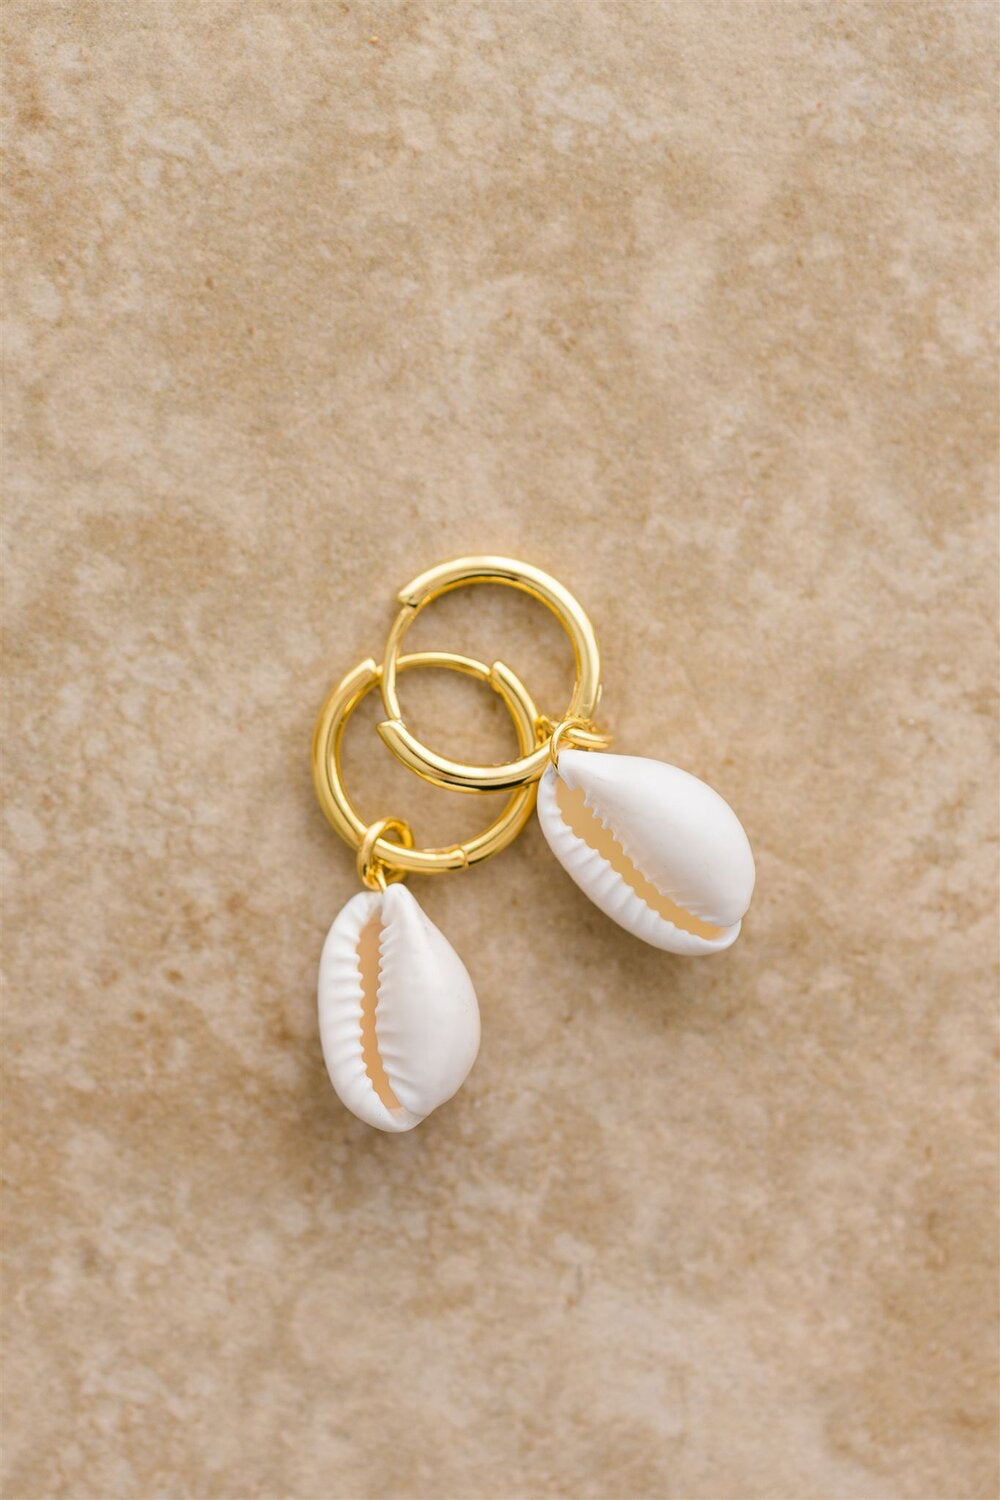 Maui - Cowrie Shell Earrings